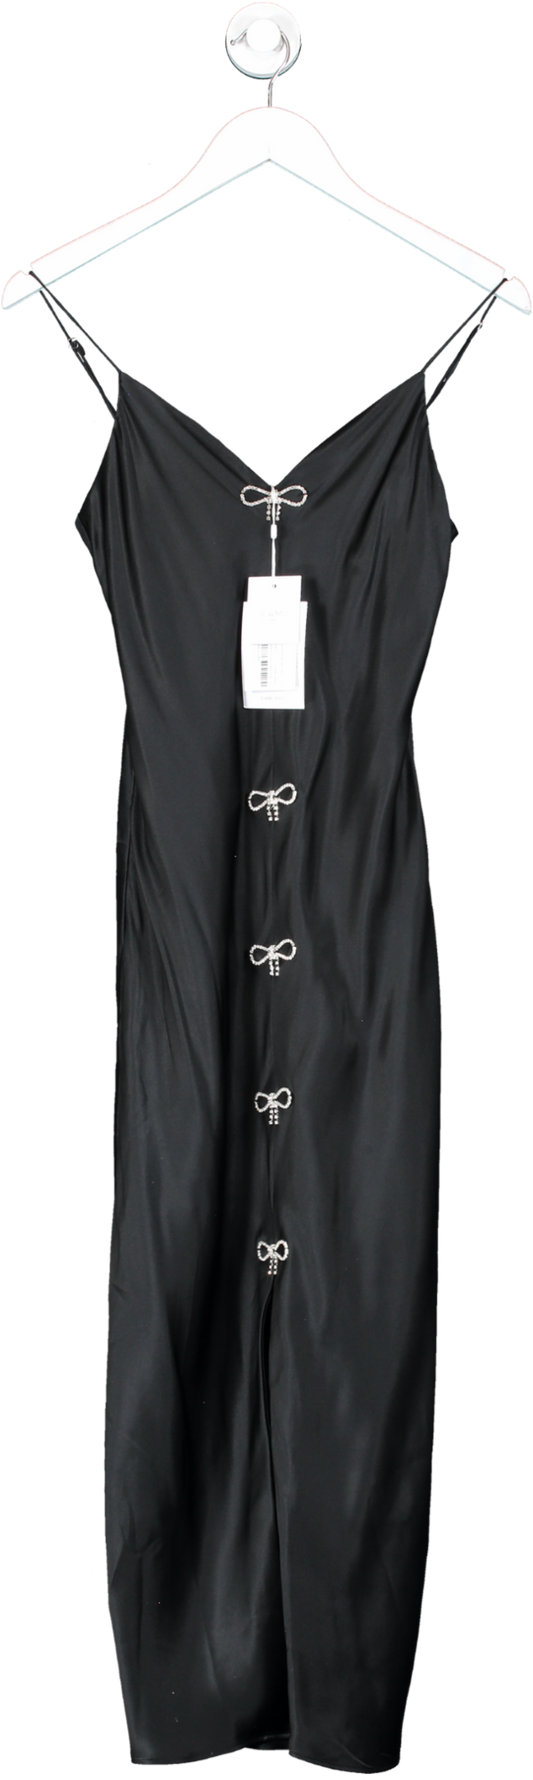 CAMI NYC Black Cerula Crystal bows embellished Silk Dress UK S